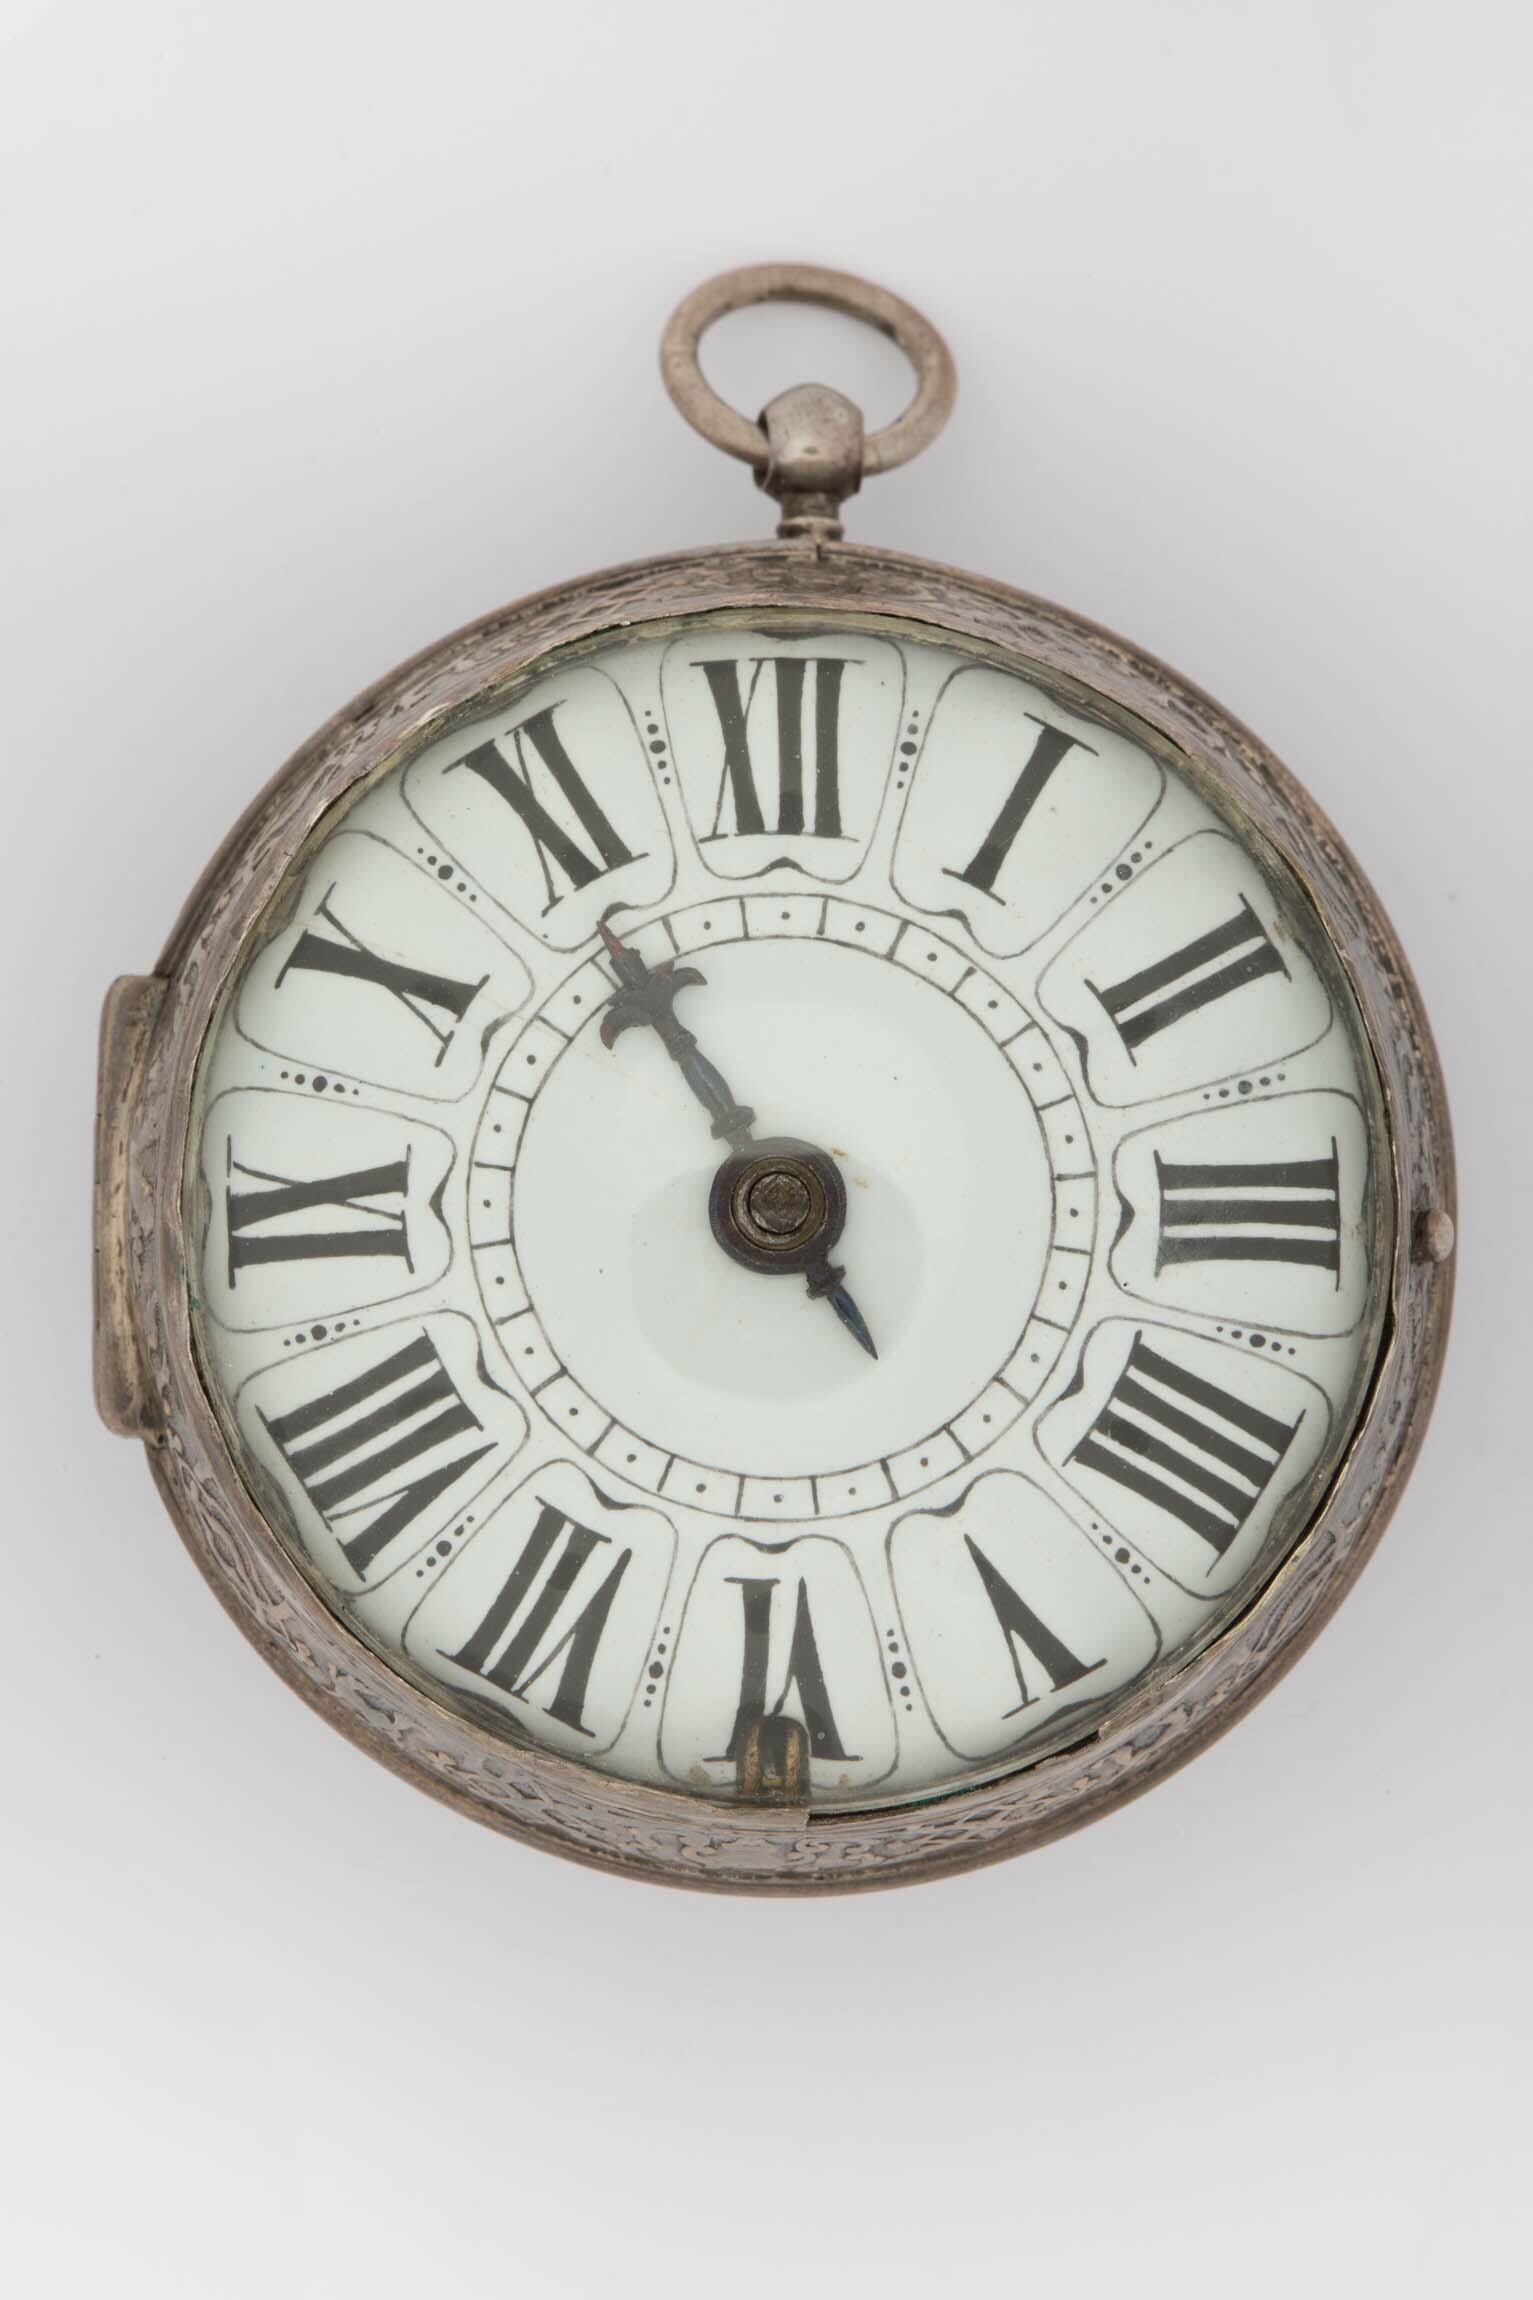 Taschenuhr, Dallie, Paris, um 1725 (Deutsches Uhrenmuseum CC BY-SA)